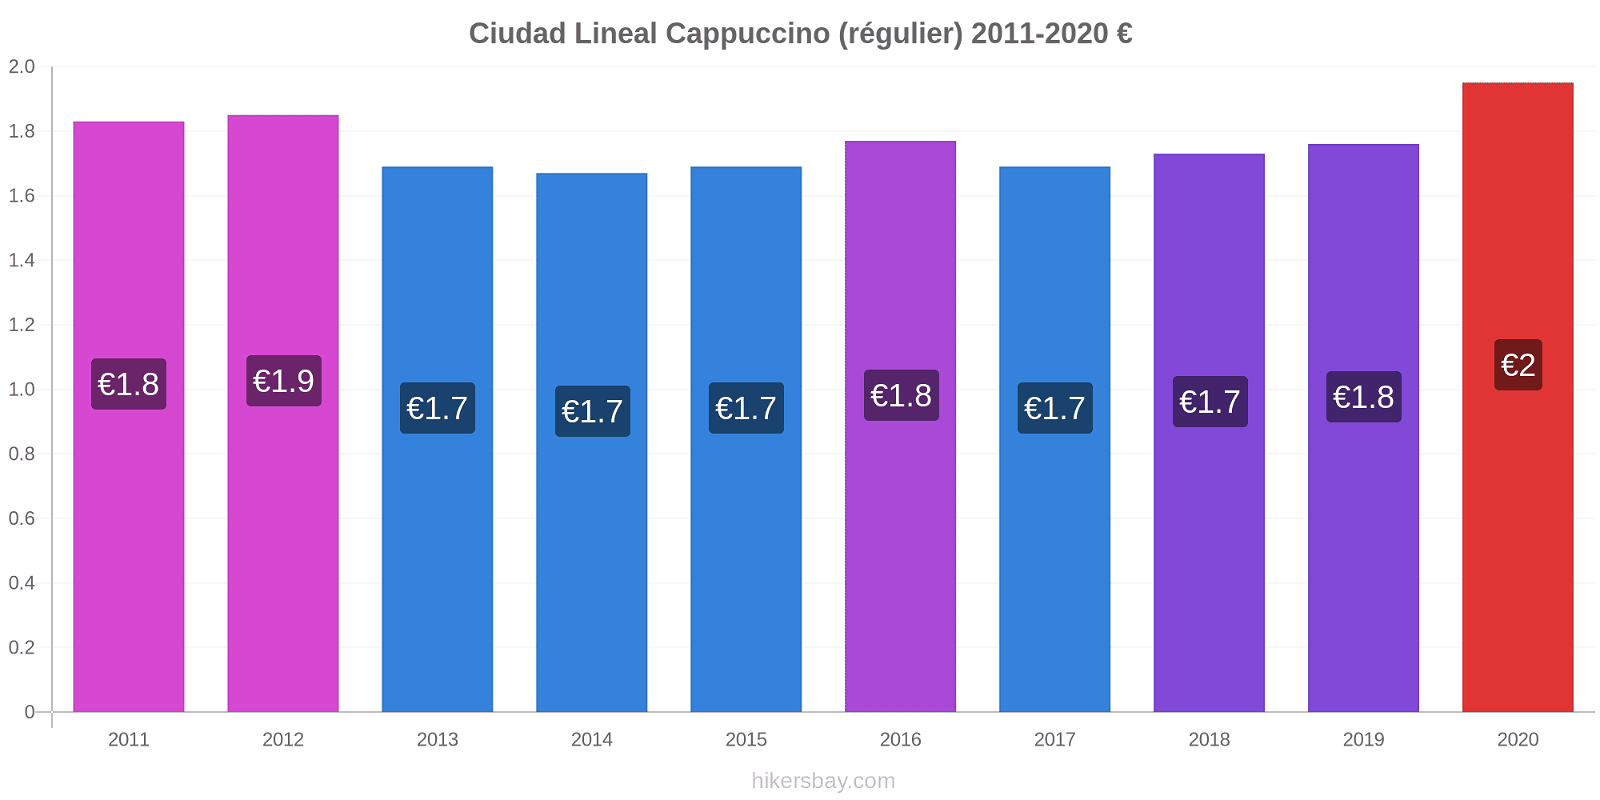 Ciudad Lineal changements de prix Cappuccino (régulier) hikersbay.com